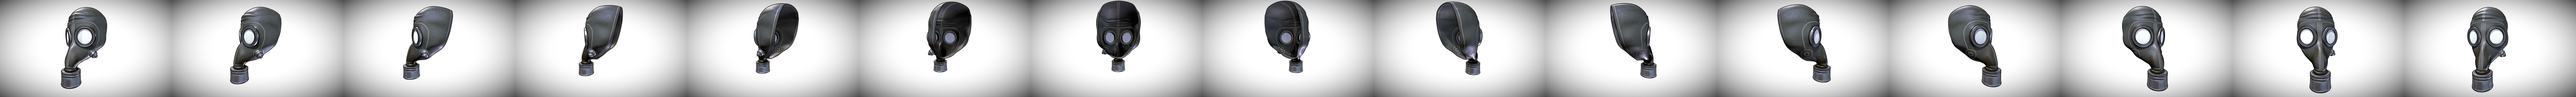 Masque à gaz casque modèle 3D militaire protection contre la pollution  pollution armure fantastique modèle 3D $38 - .unknown .obj .fbx .ma - Free3D